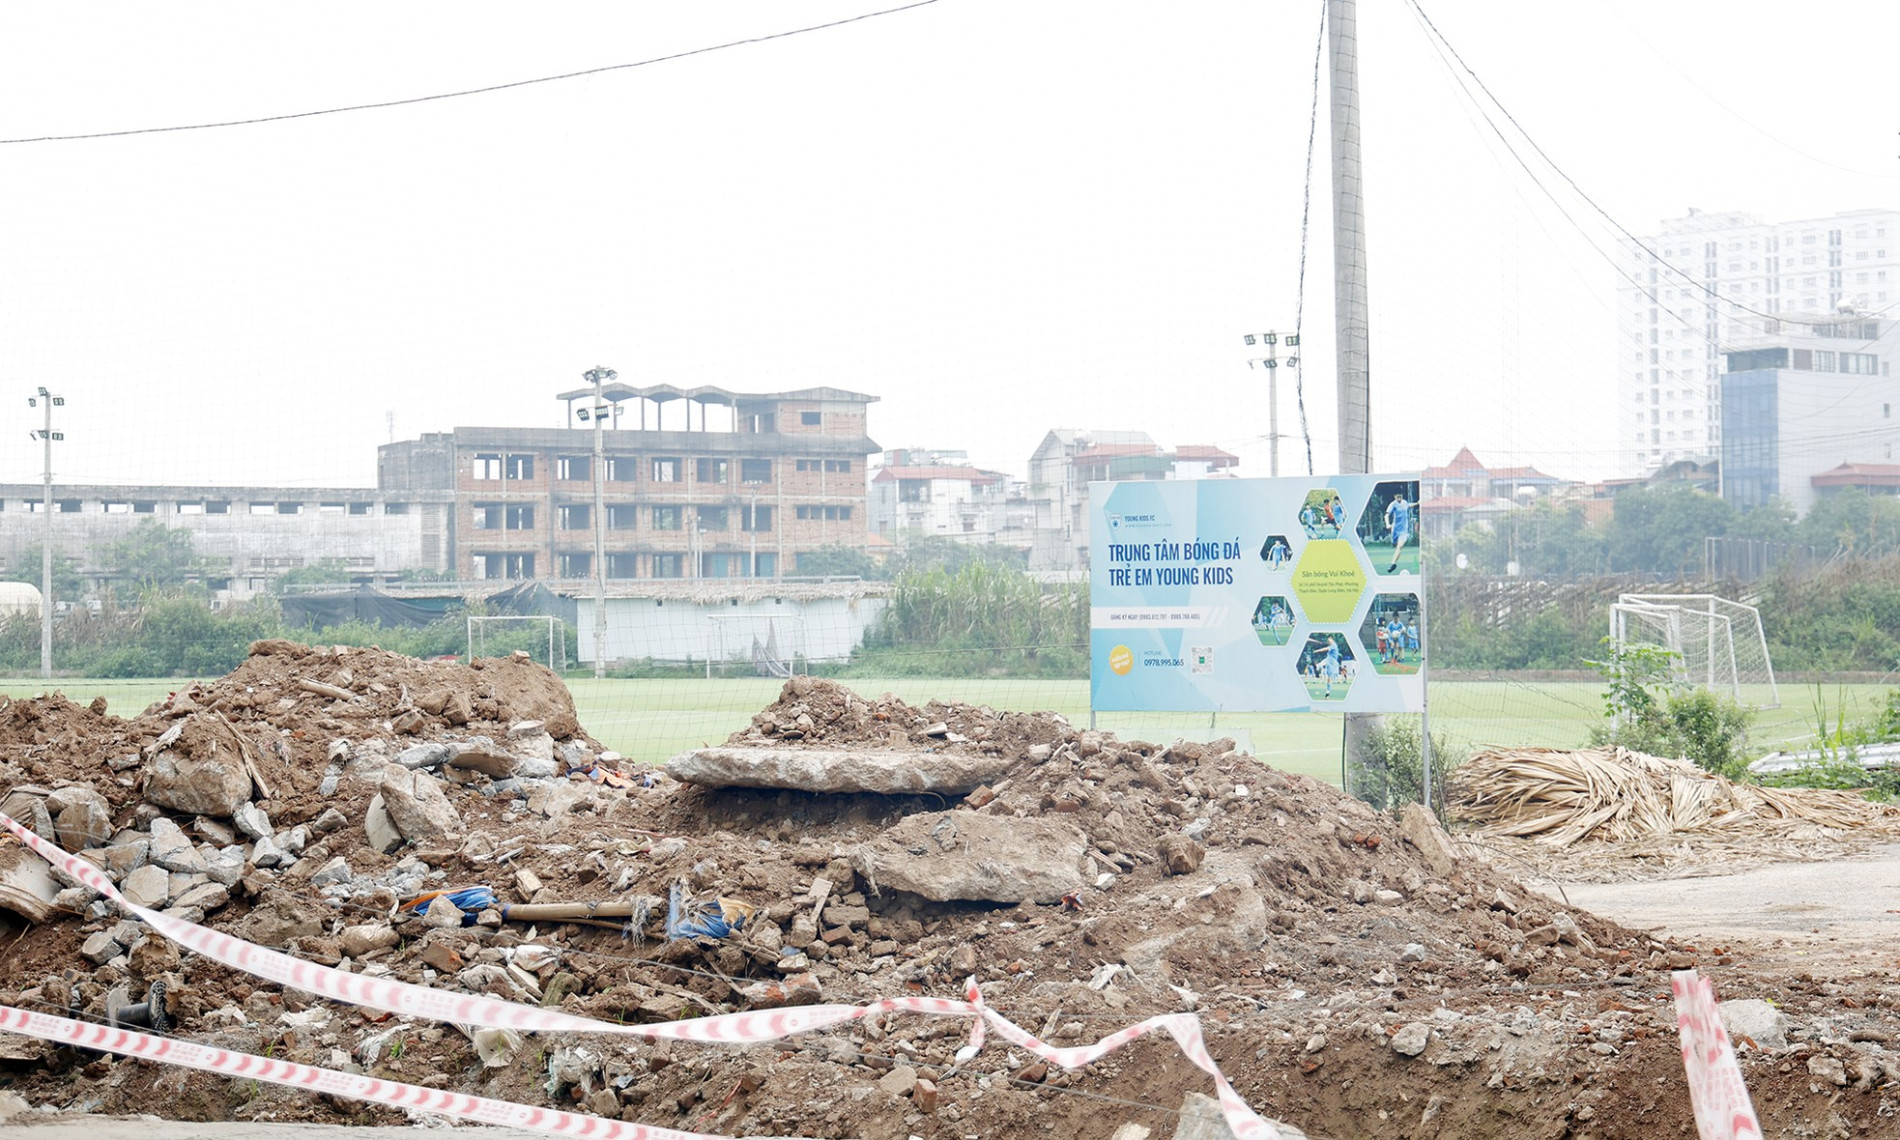 Cận cảnh dự án khu đô thị ở Hà Nội biến tướng thành sân bóng, cho thuê tùm lum ảnh 11